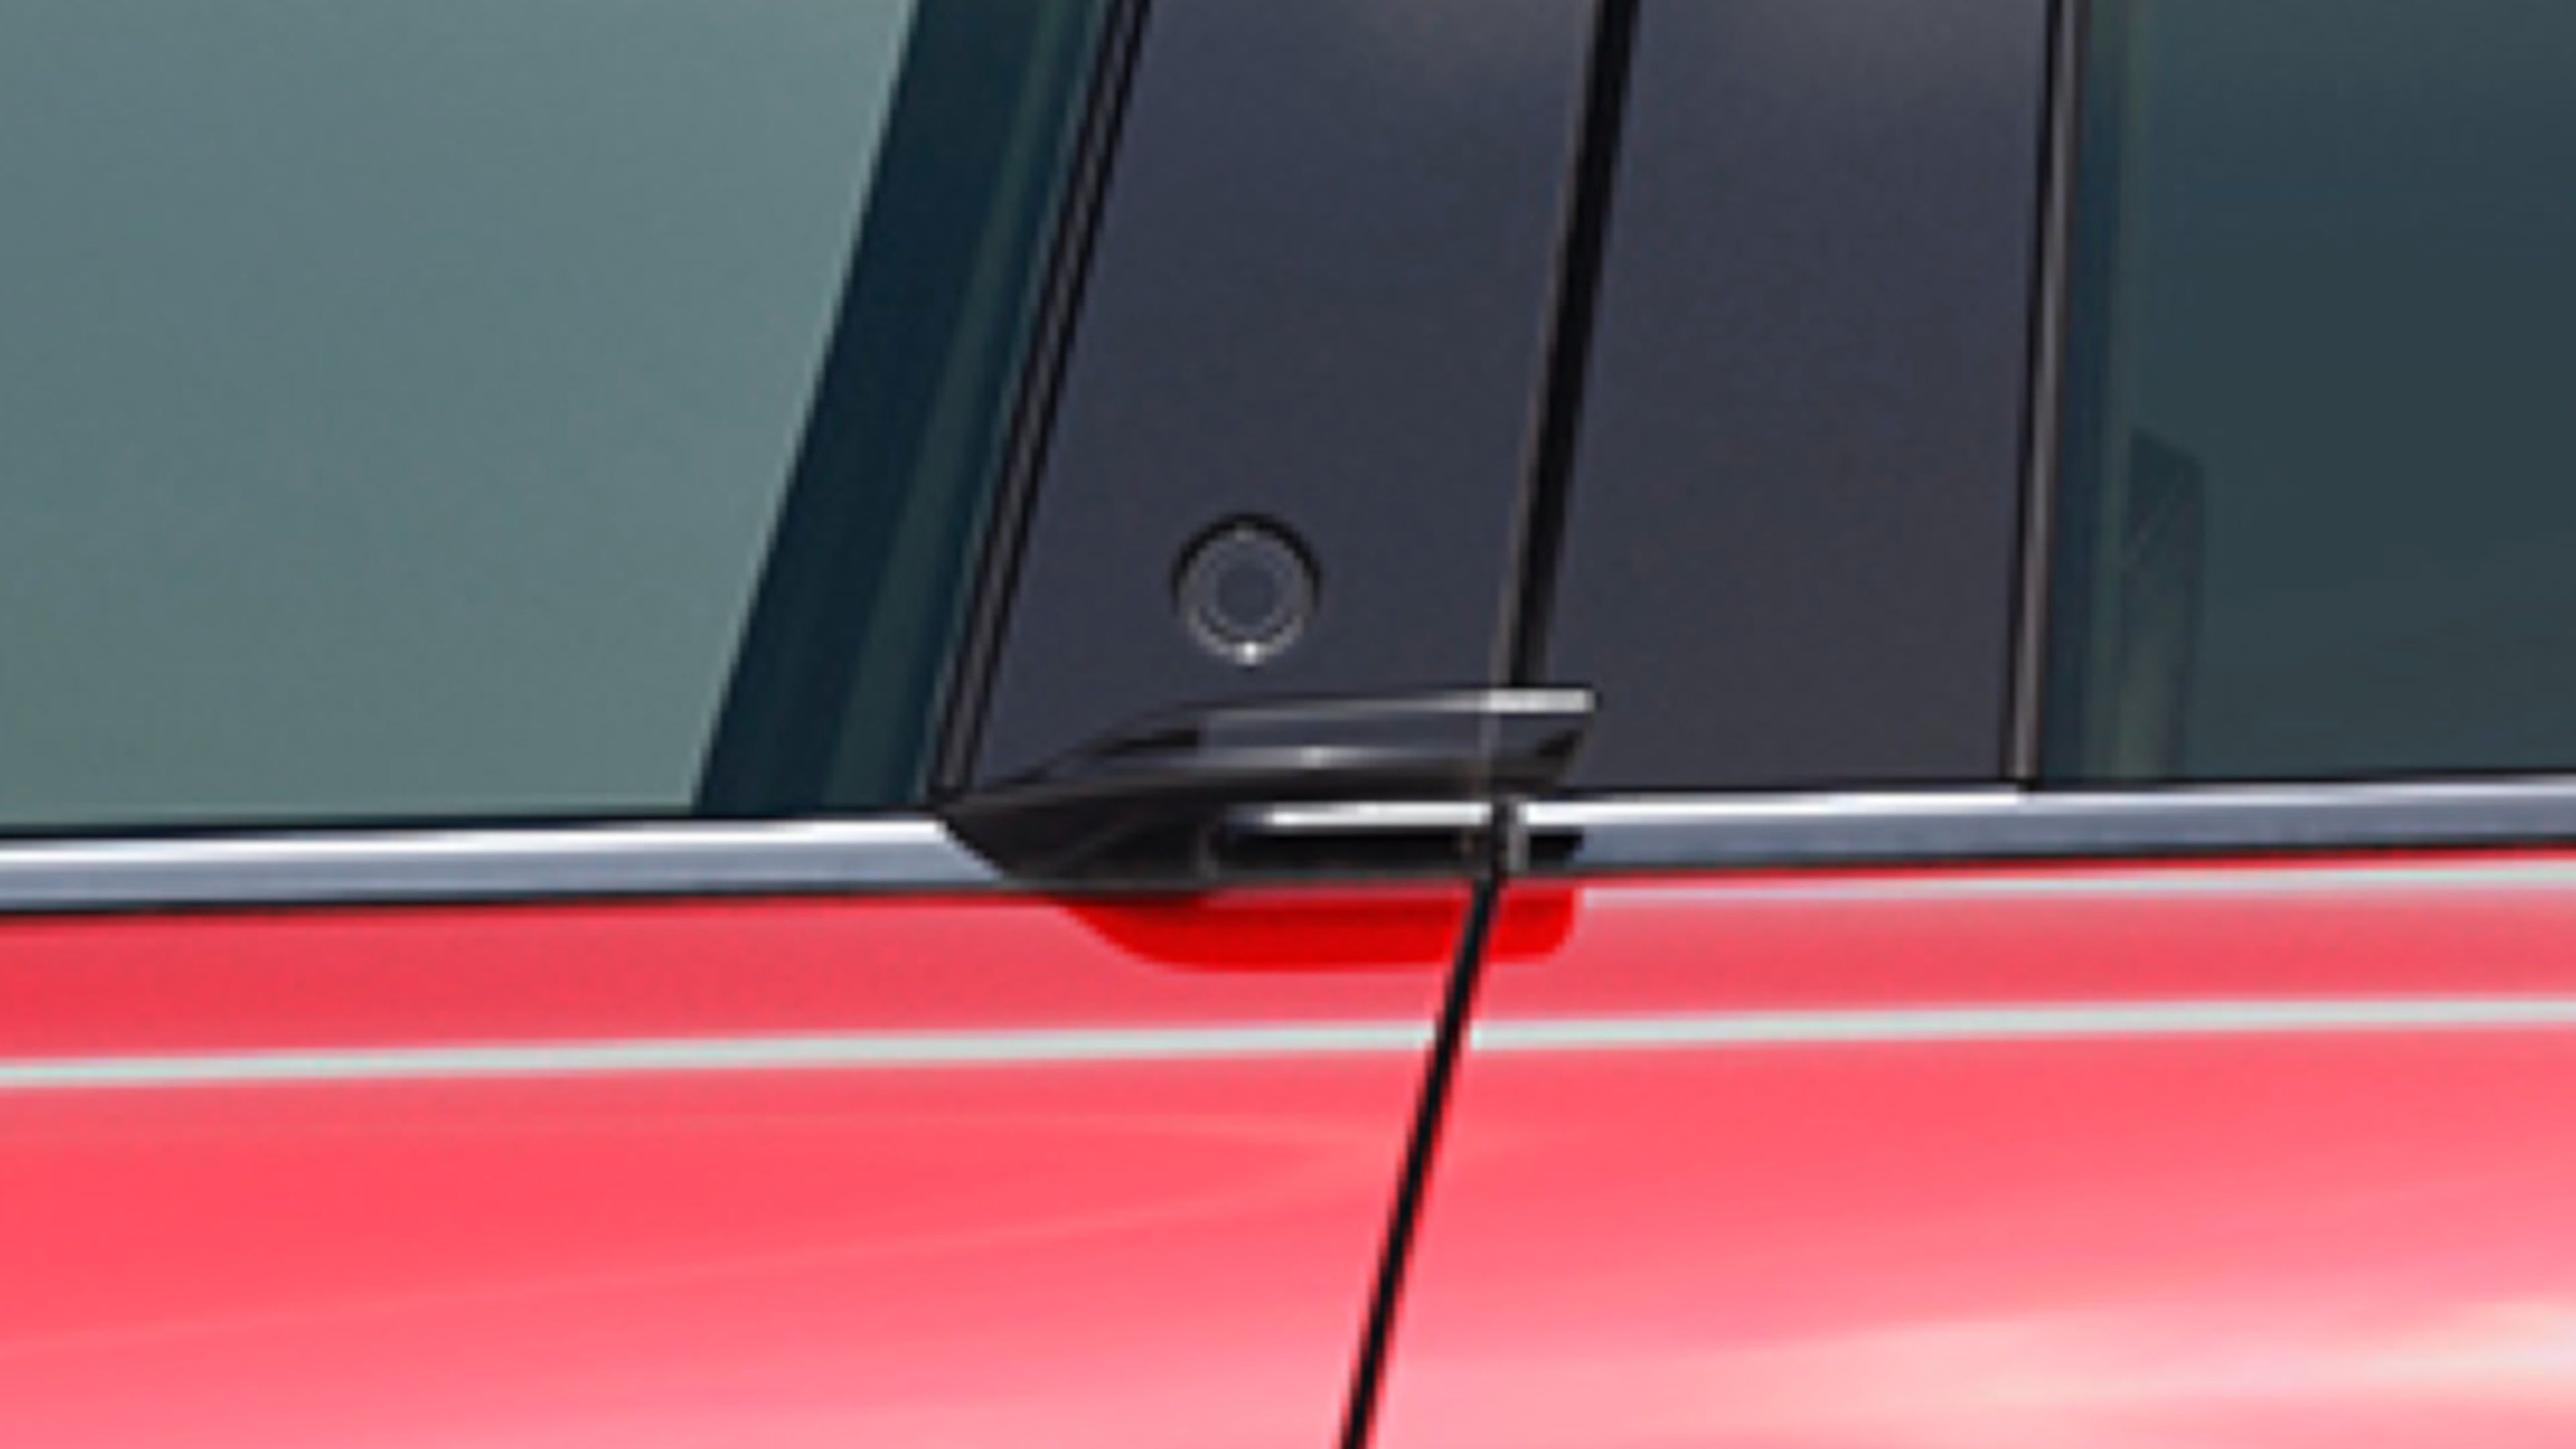 Detalle del pulsador de apertura de la puerta delantera así como el minitirador del Mustang Mach-E.